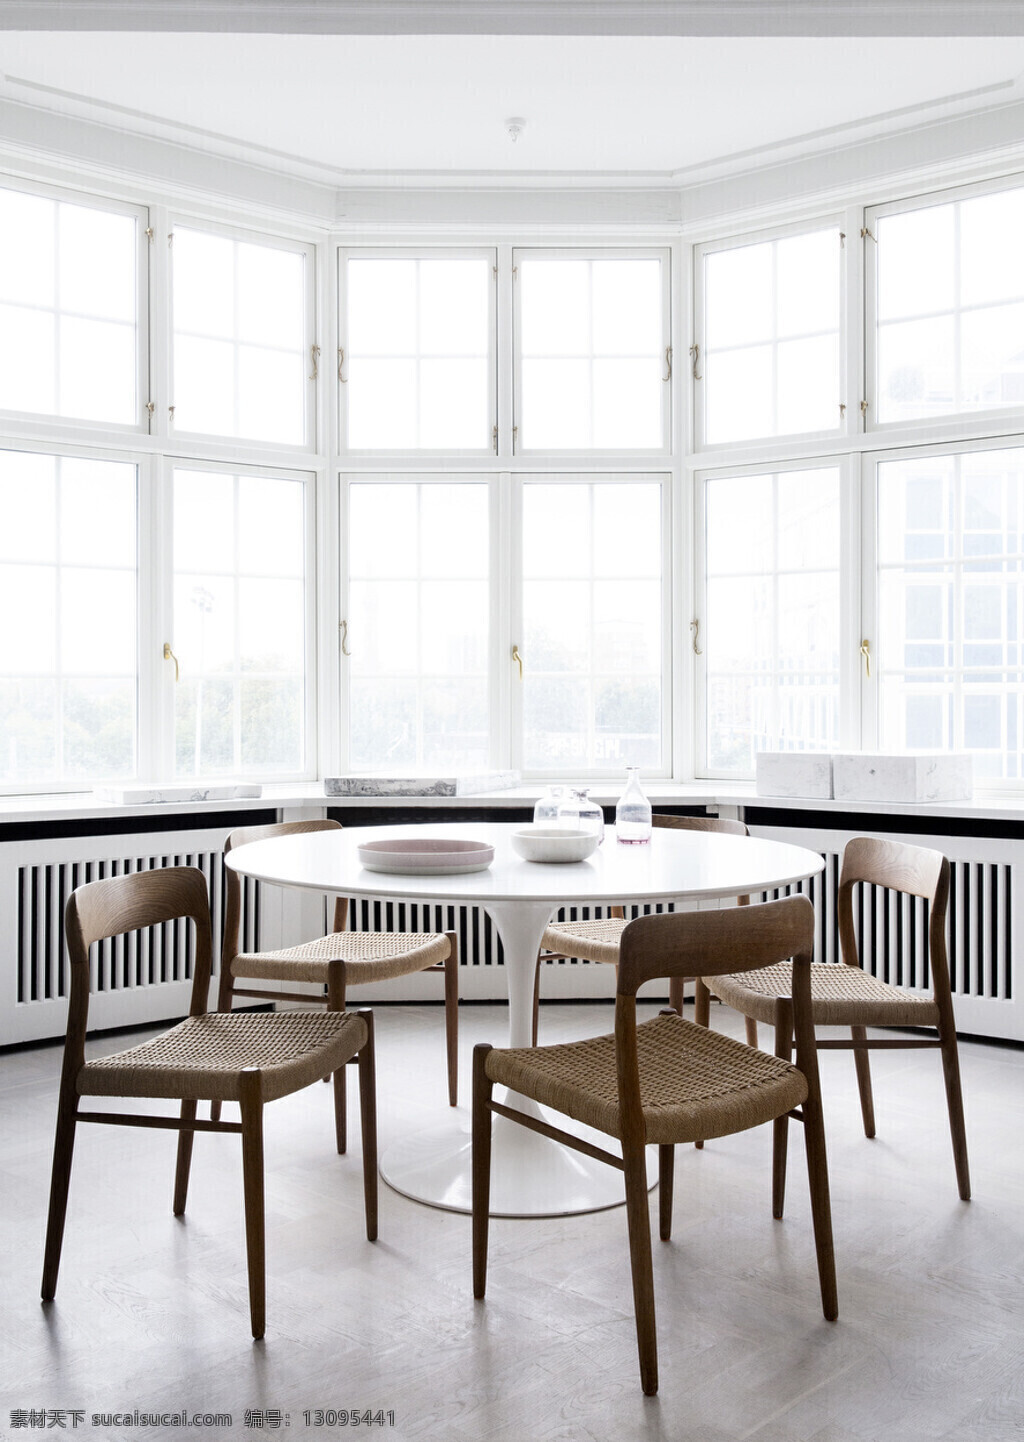 北欧 时尚 客厅 白色 圆桌 室内 效果图 室内装修 客厅装修 瓷砖地板 圆形桌子 褐色椅子